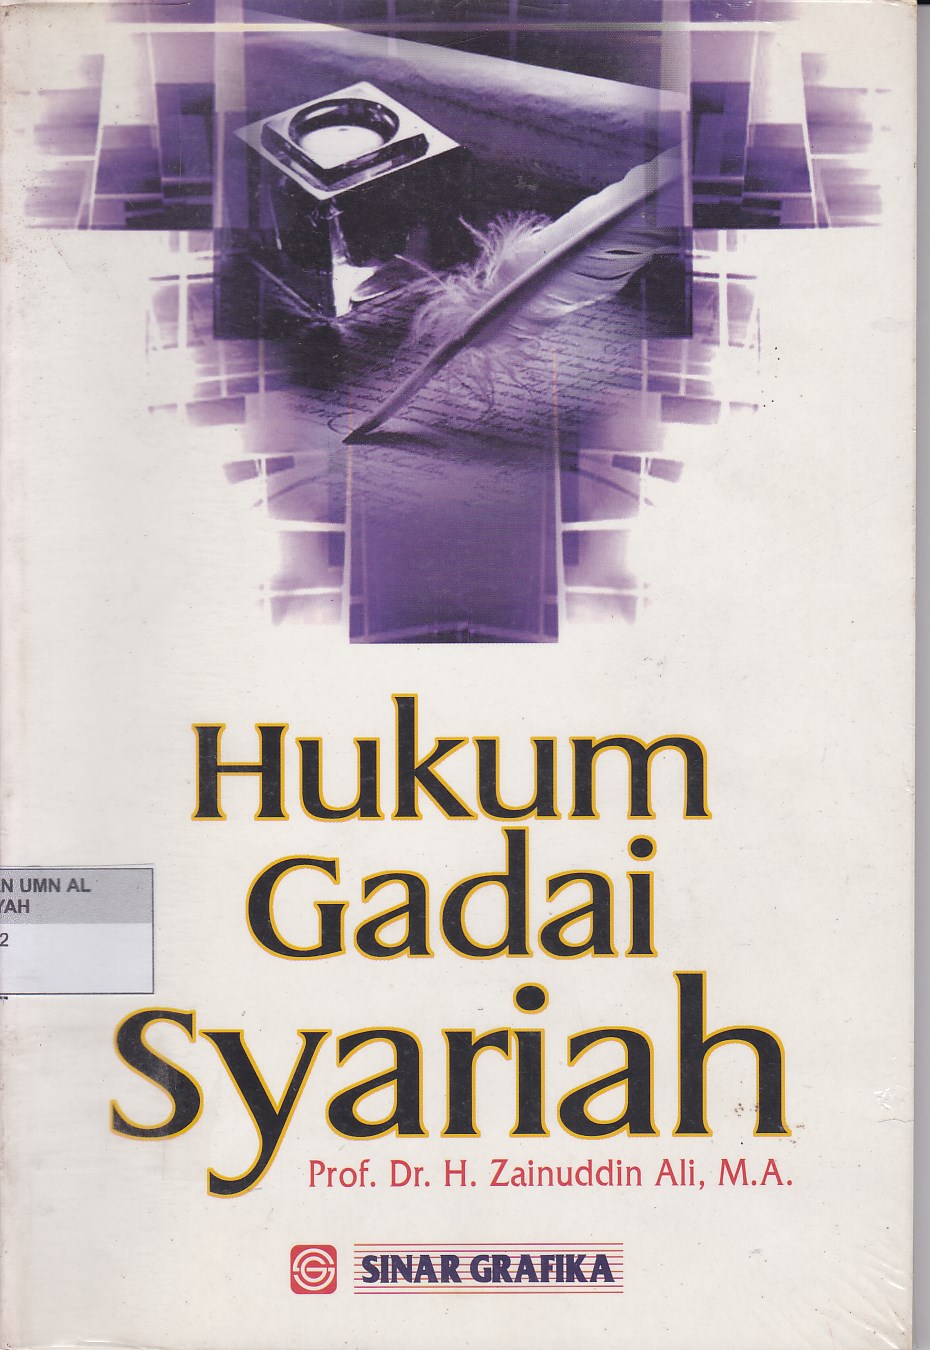 HUKUM GADAI SYARIAH